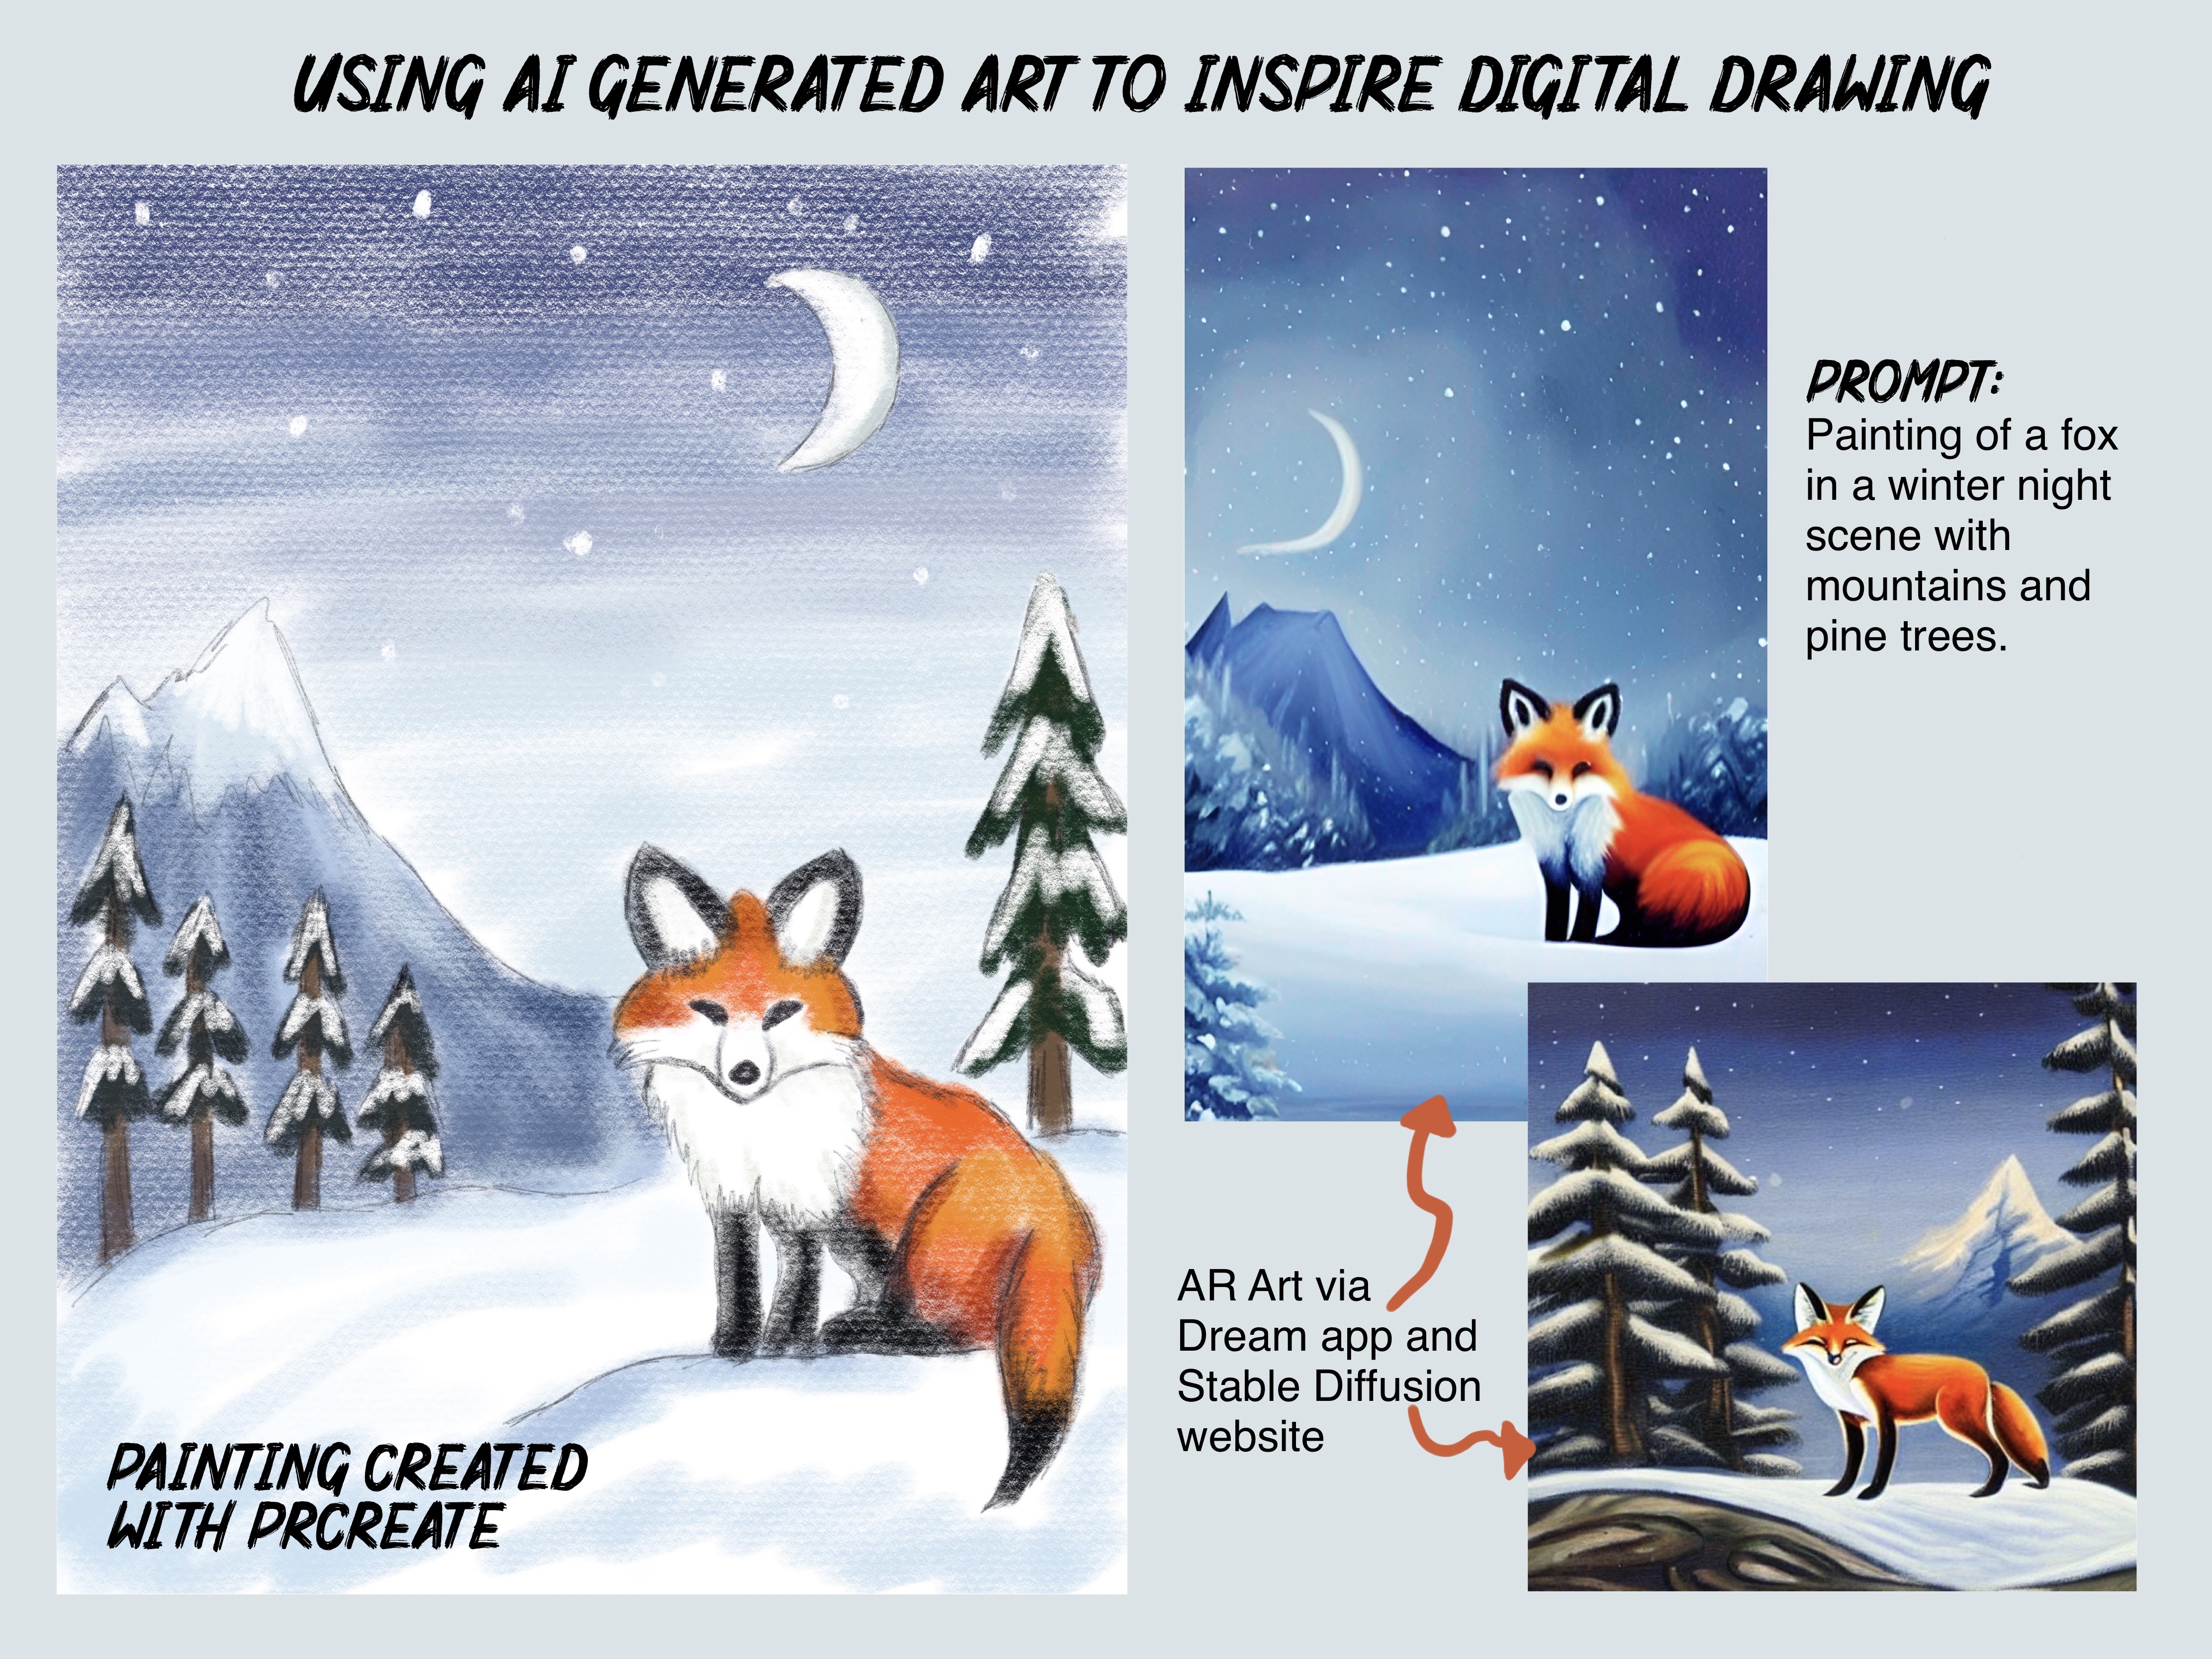 Artwork of a Fox in a winter scene